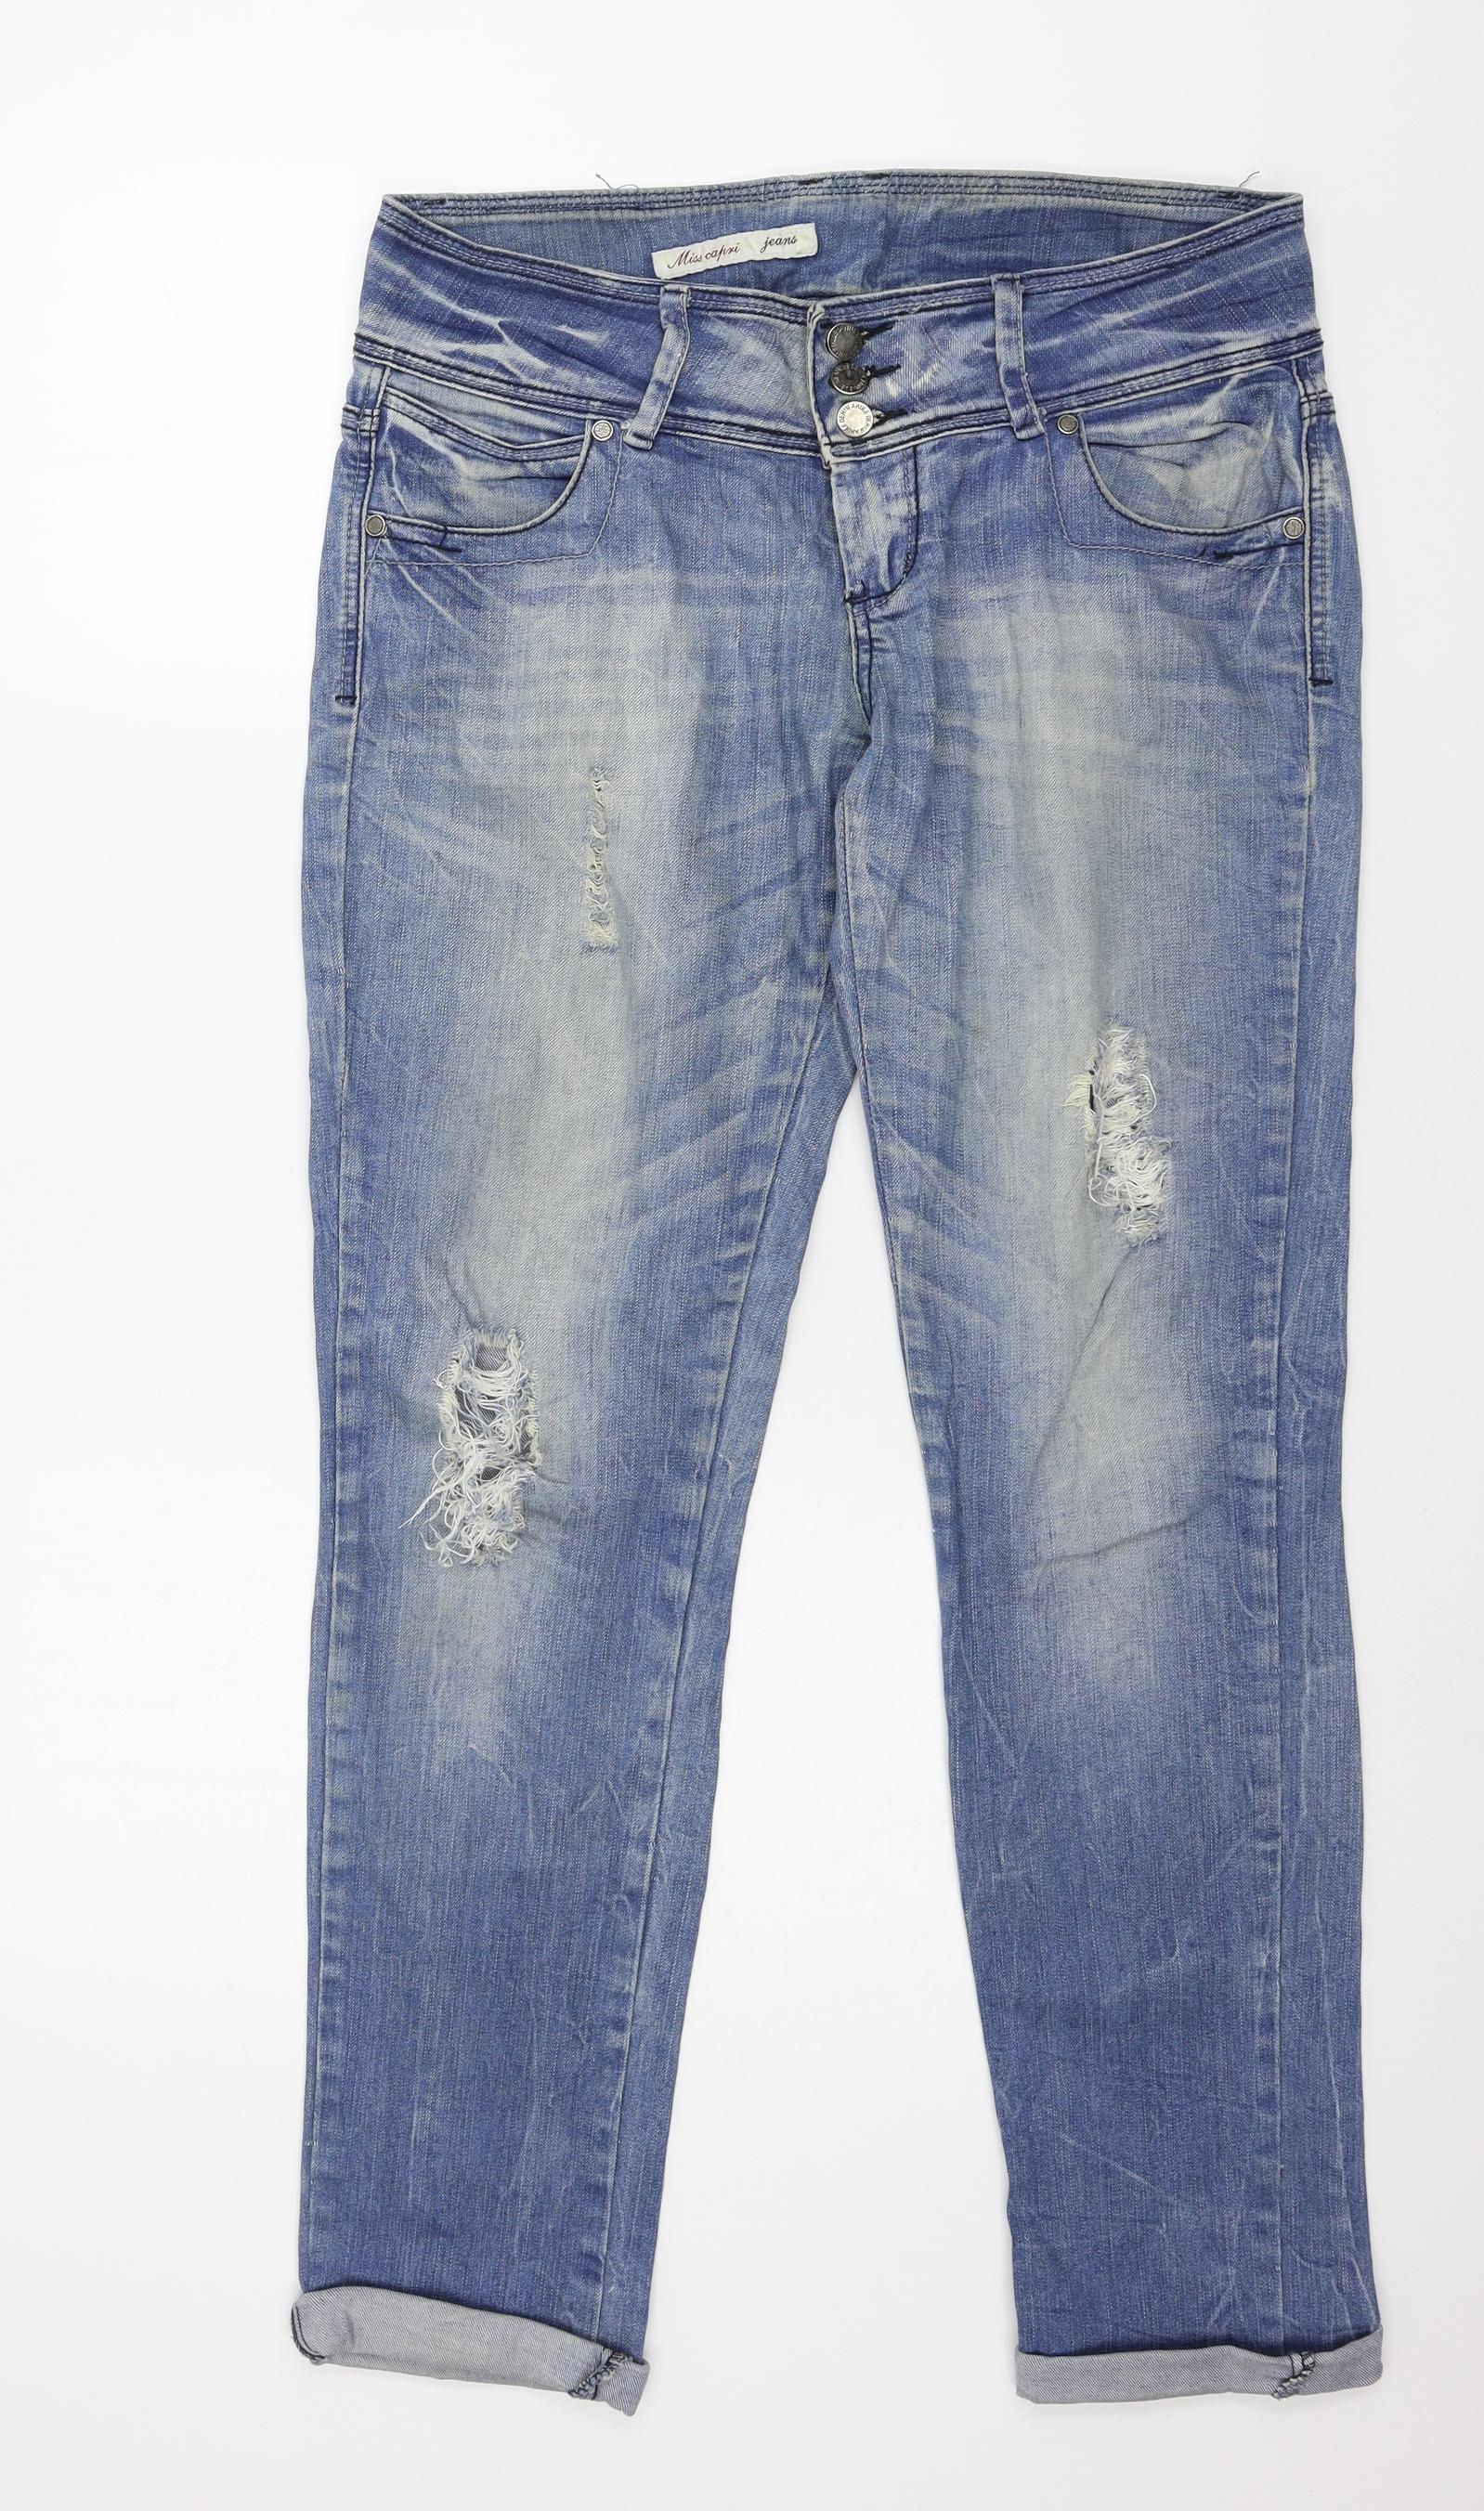 Miss Capri Womens Blue Denim Mom Jeans Size 34 in L30 in – Preworn Ltd